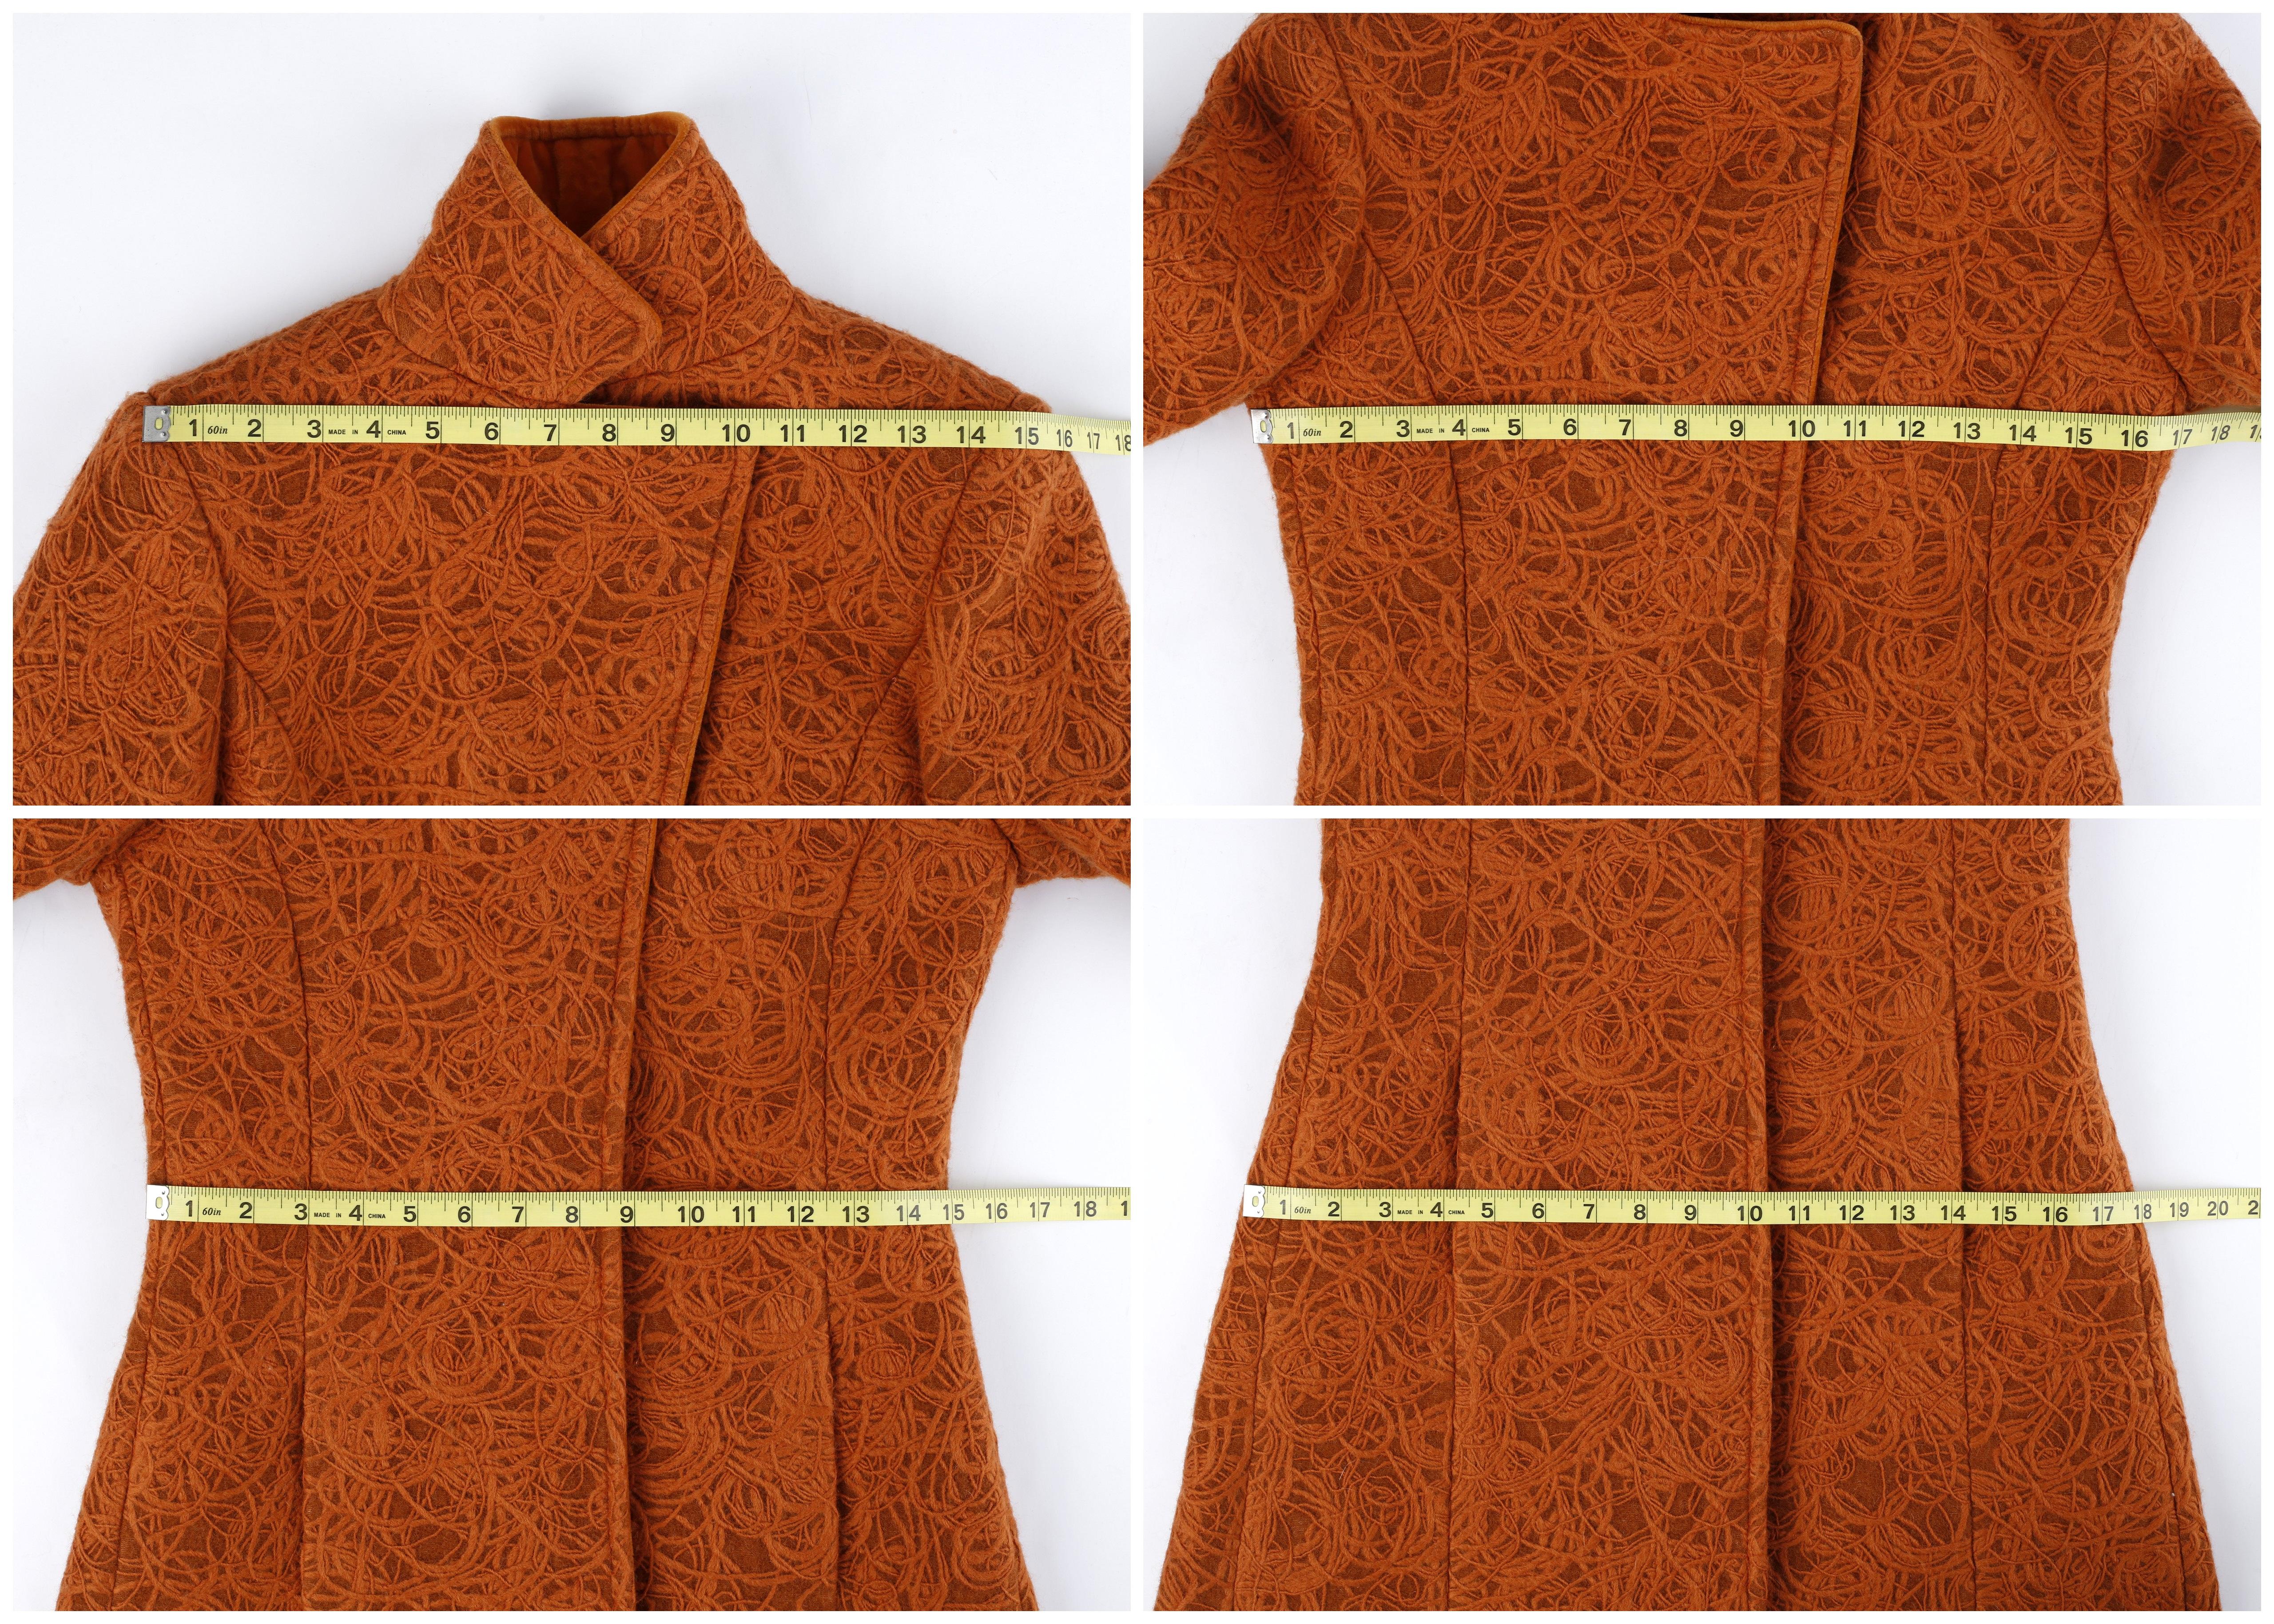 Alexander McQueen c.1996 Rust Orange Textured Wool Tailored Dress Jacket Coat  For Sale 7